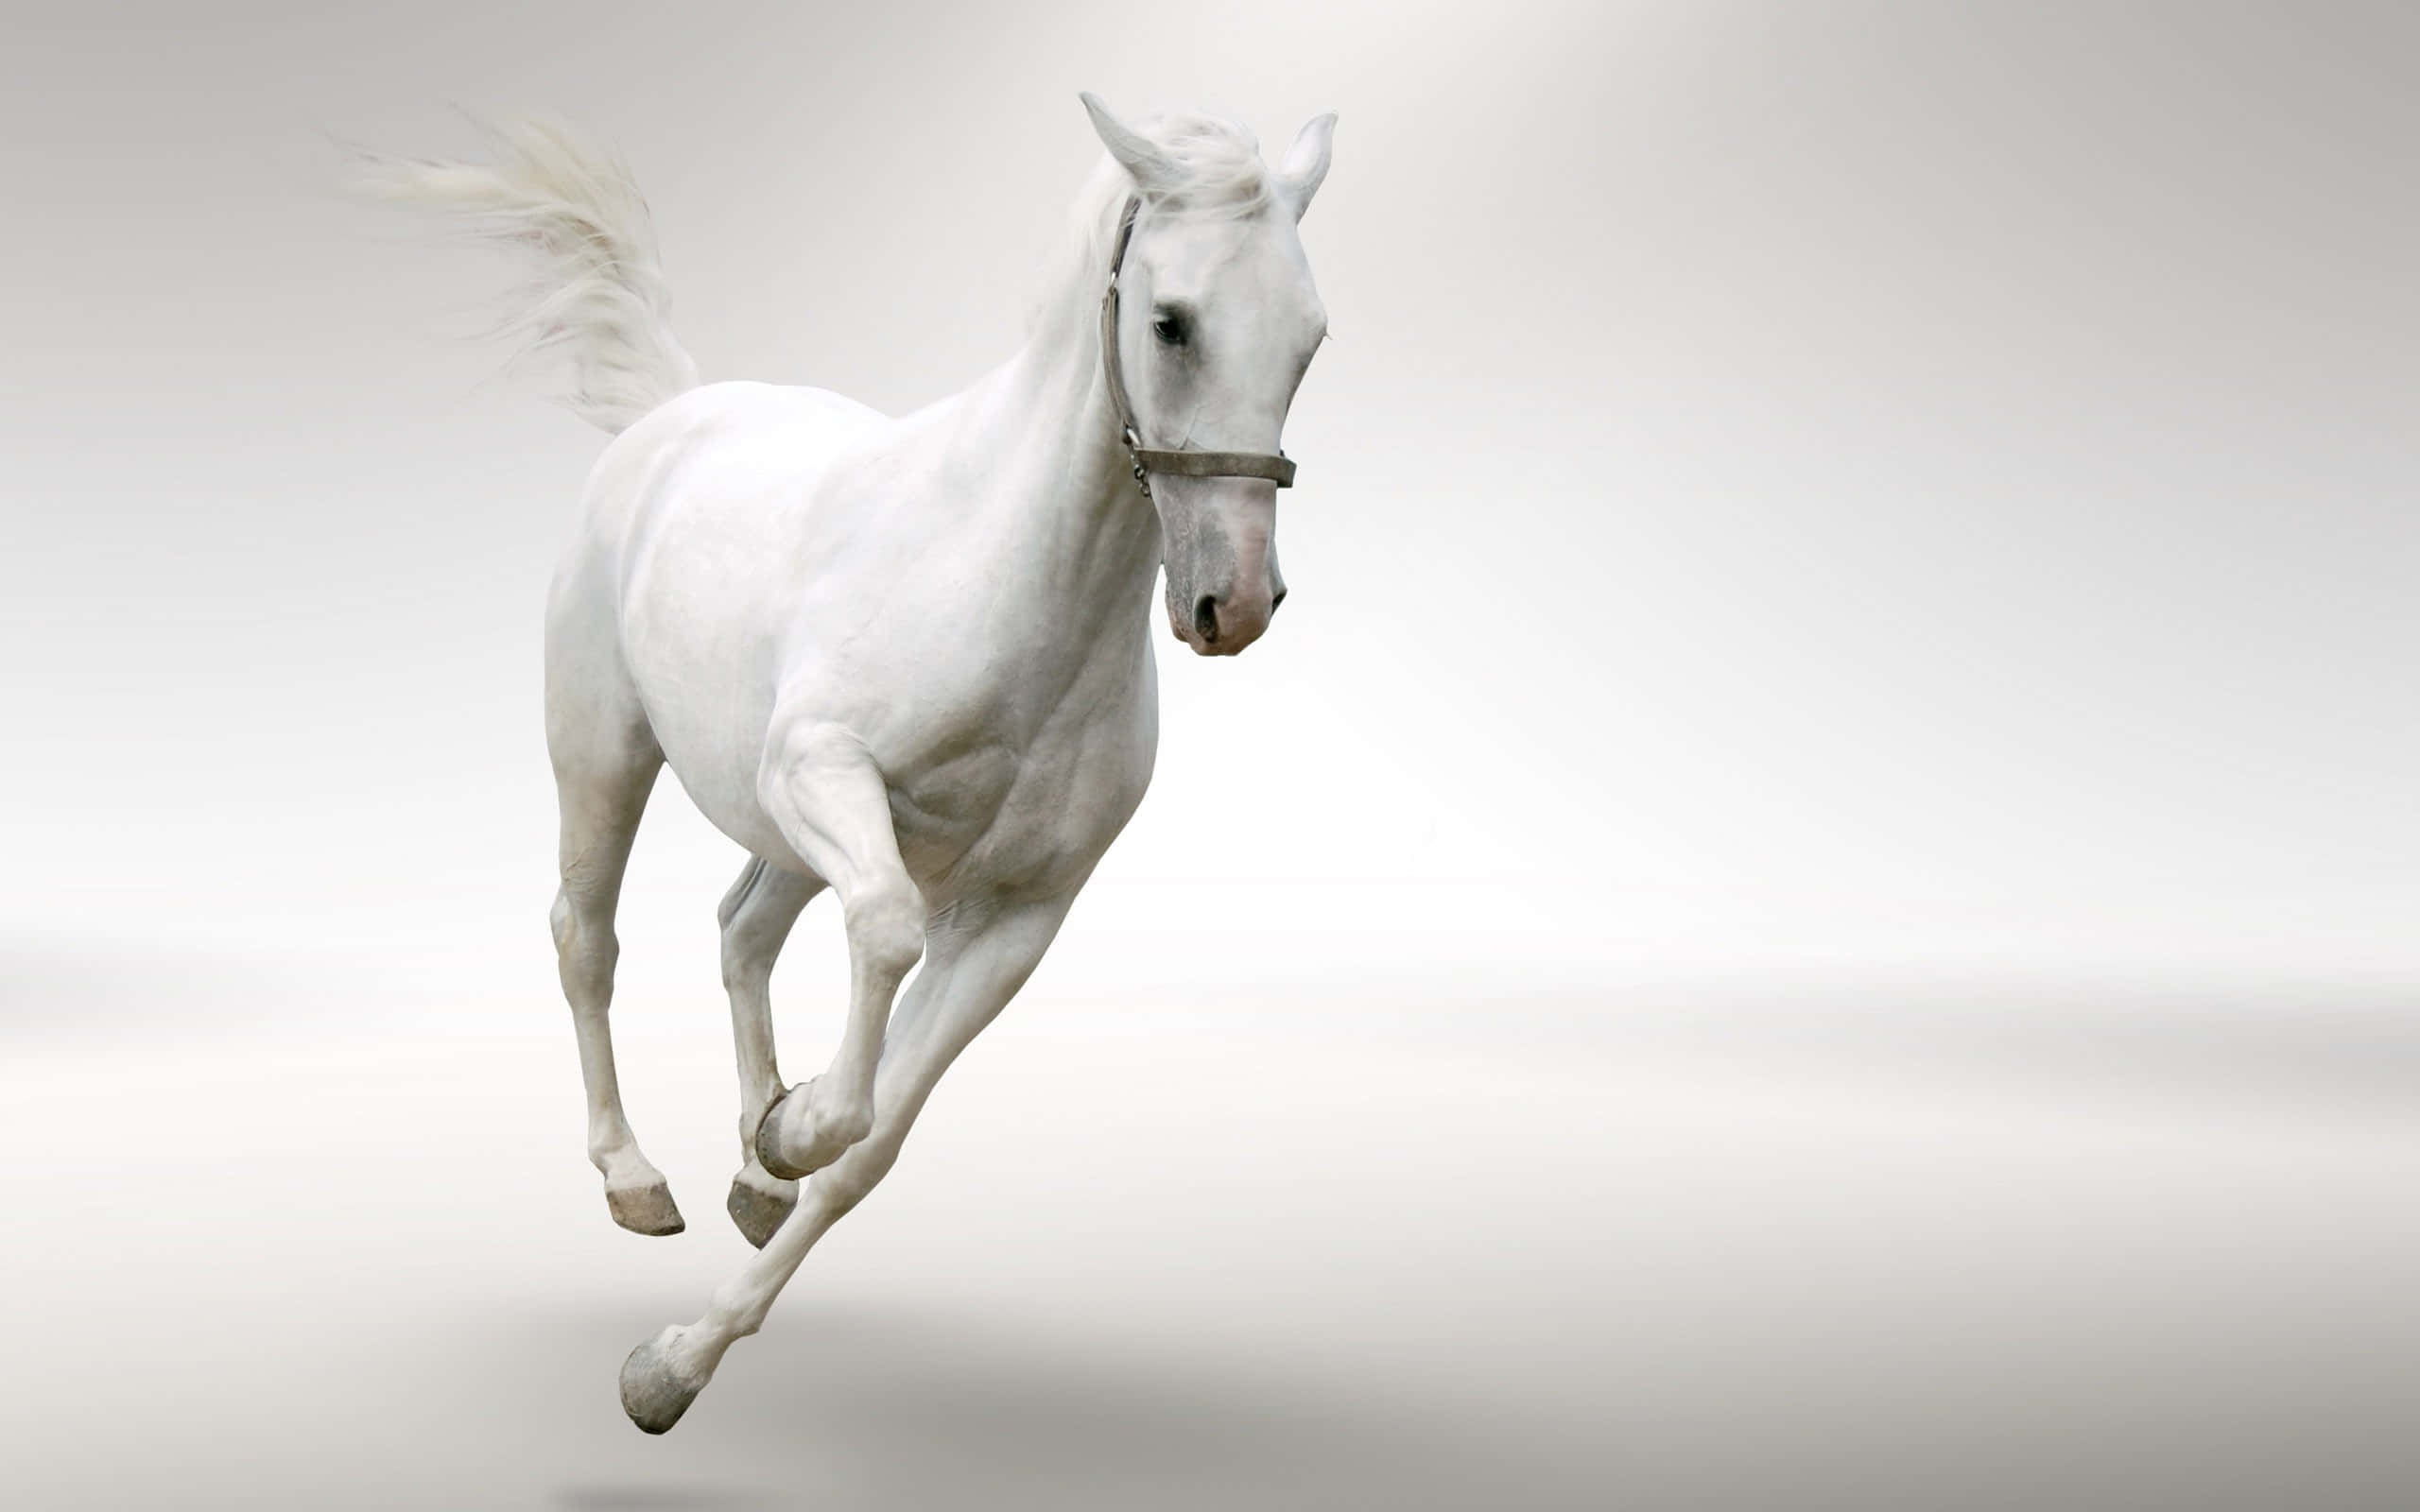 Billedeaf En Hvid Hest, Der Løber.